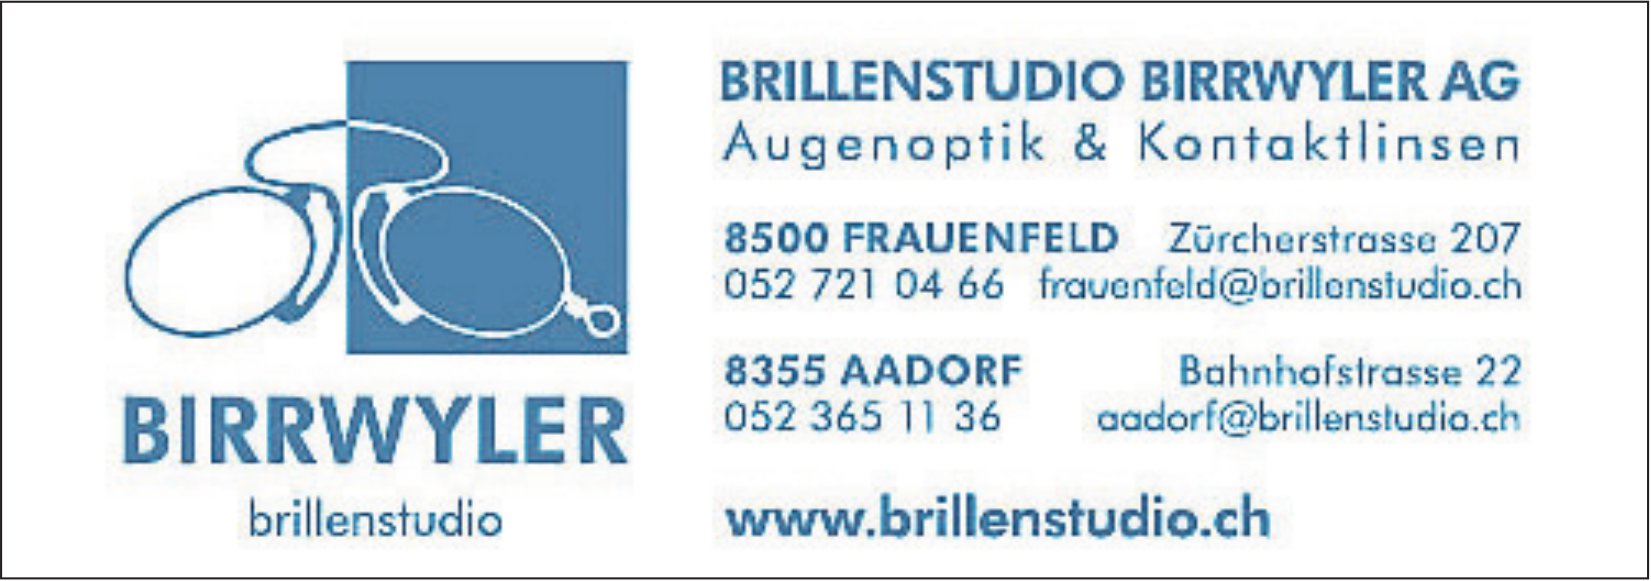 Brillenstudio Birrwyler AG, Frauenfeld & Aadorf - Augenoptik & Kontaktlinsen